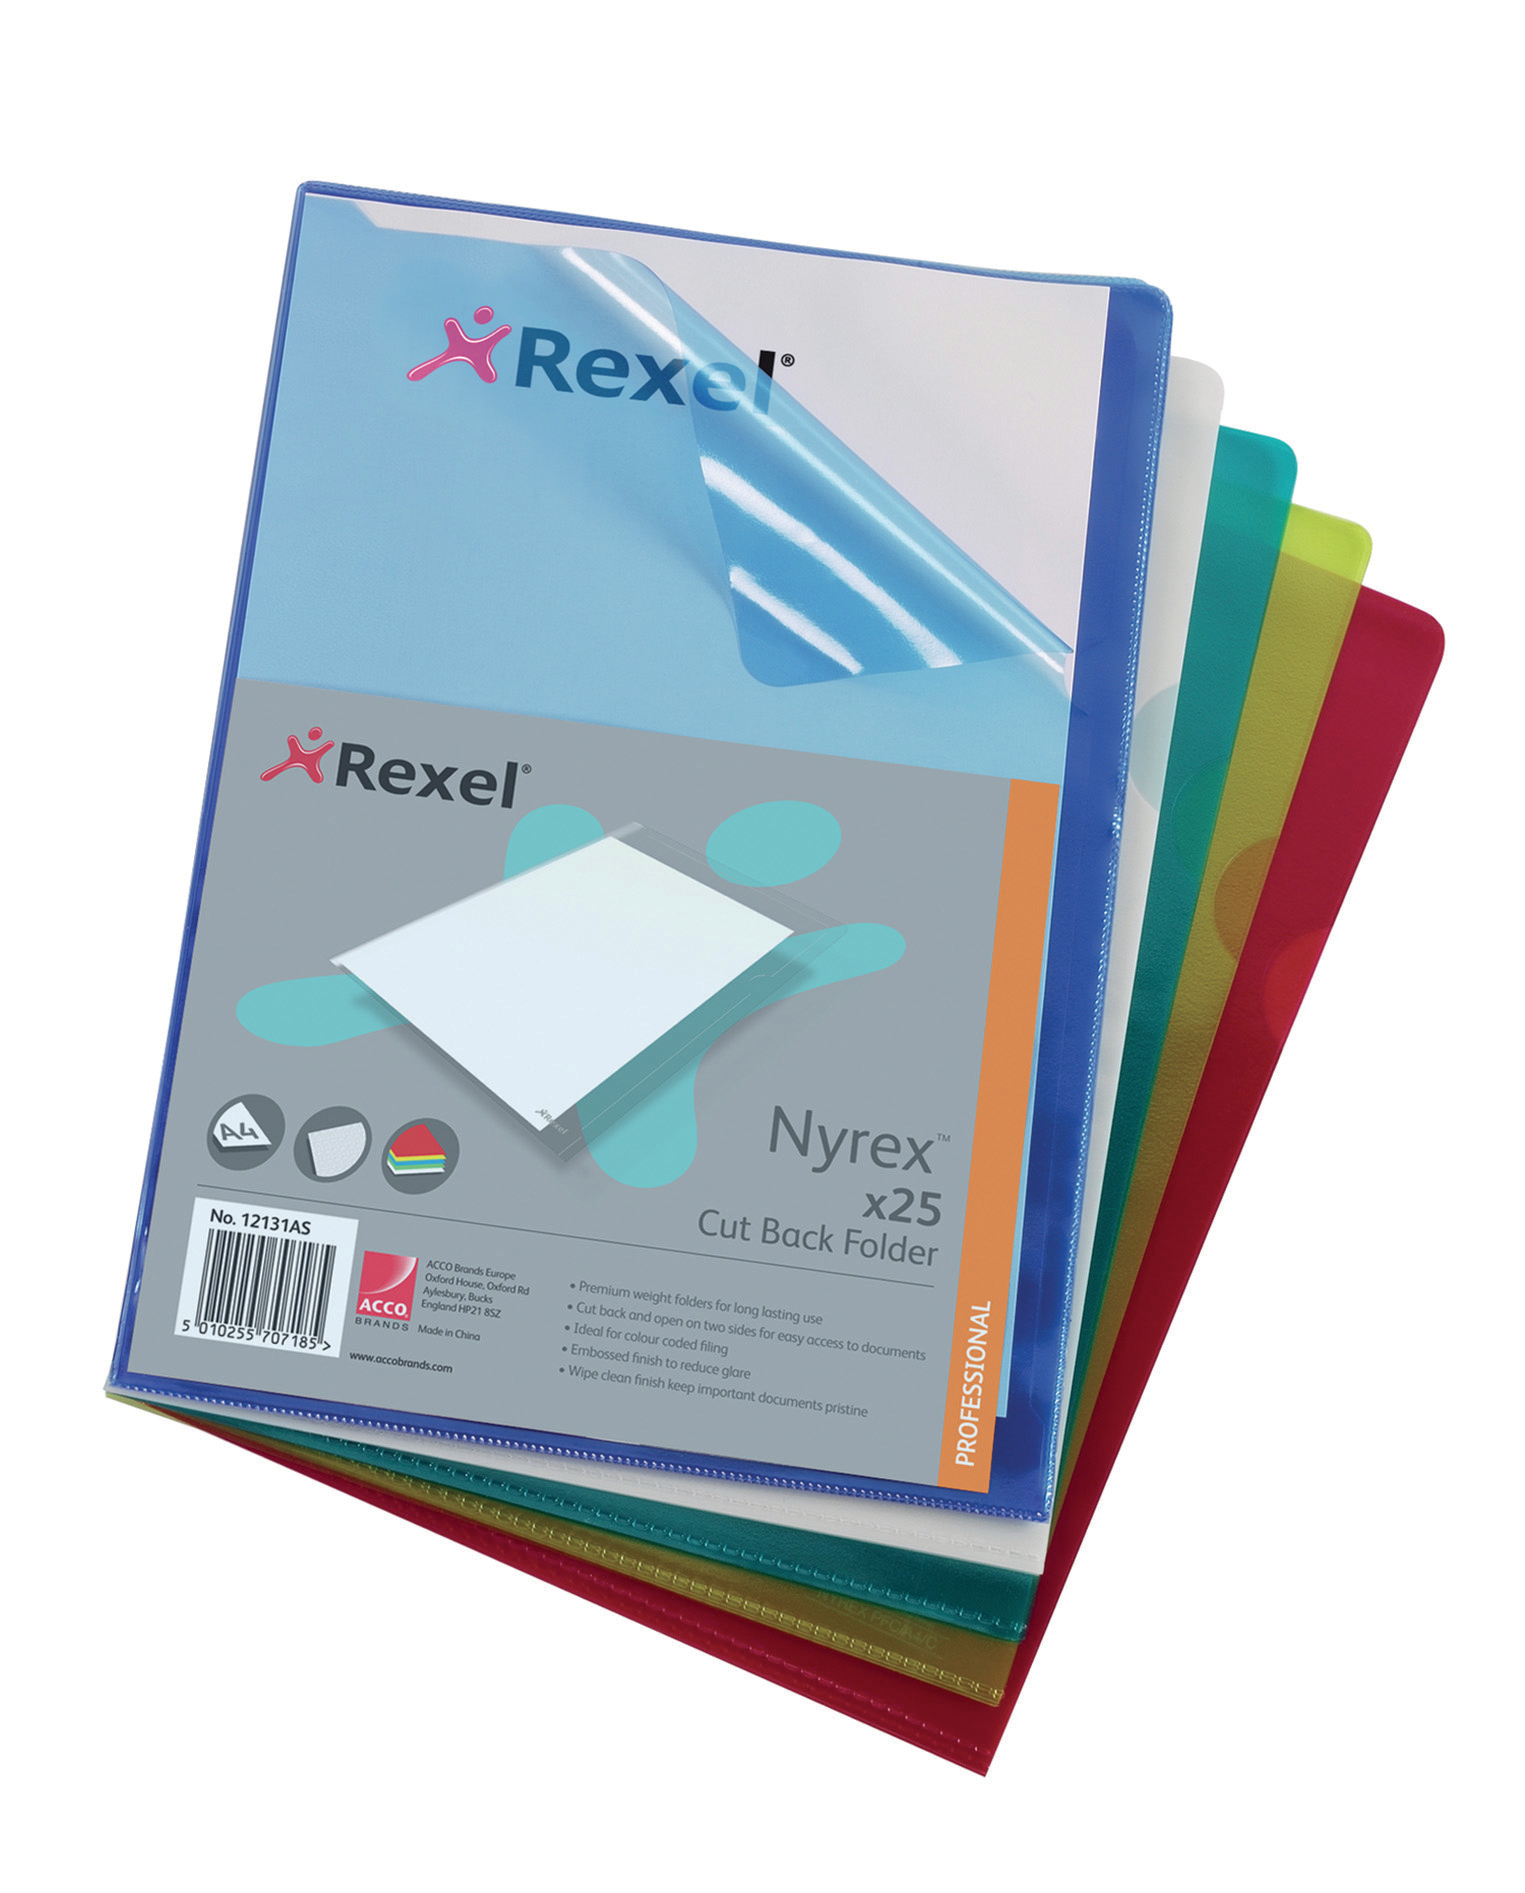 Rx Nyrex Folder Cut Back A4 Asstd PK25